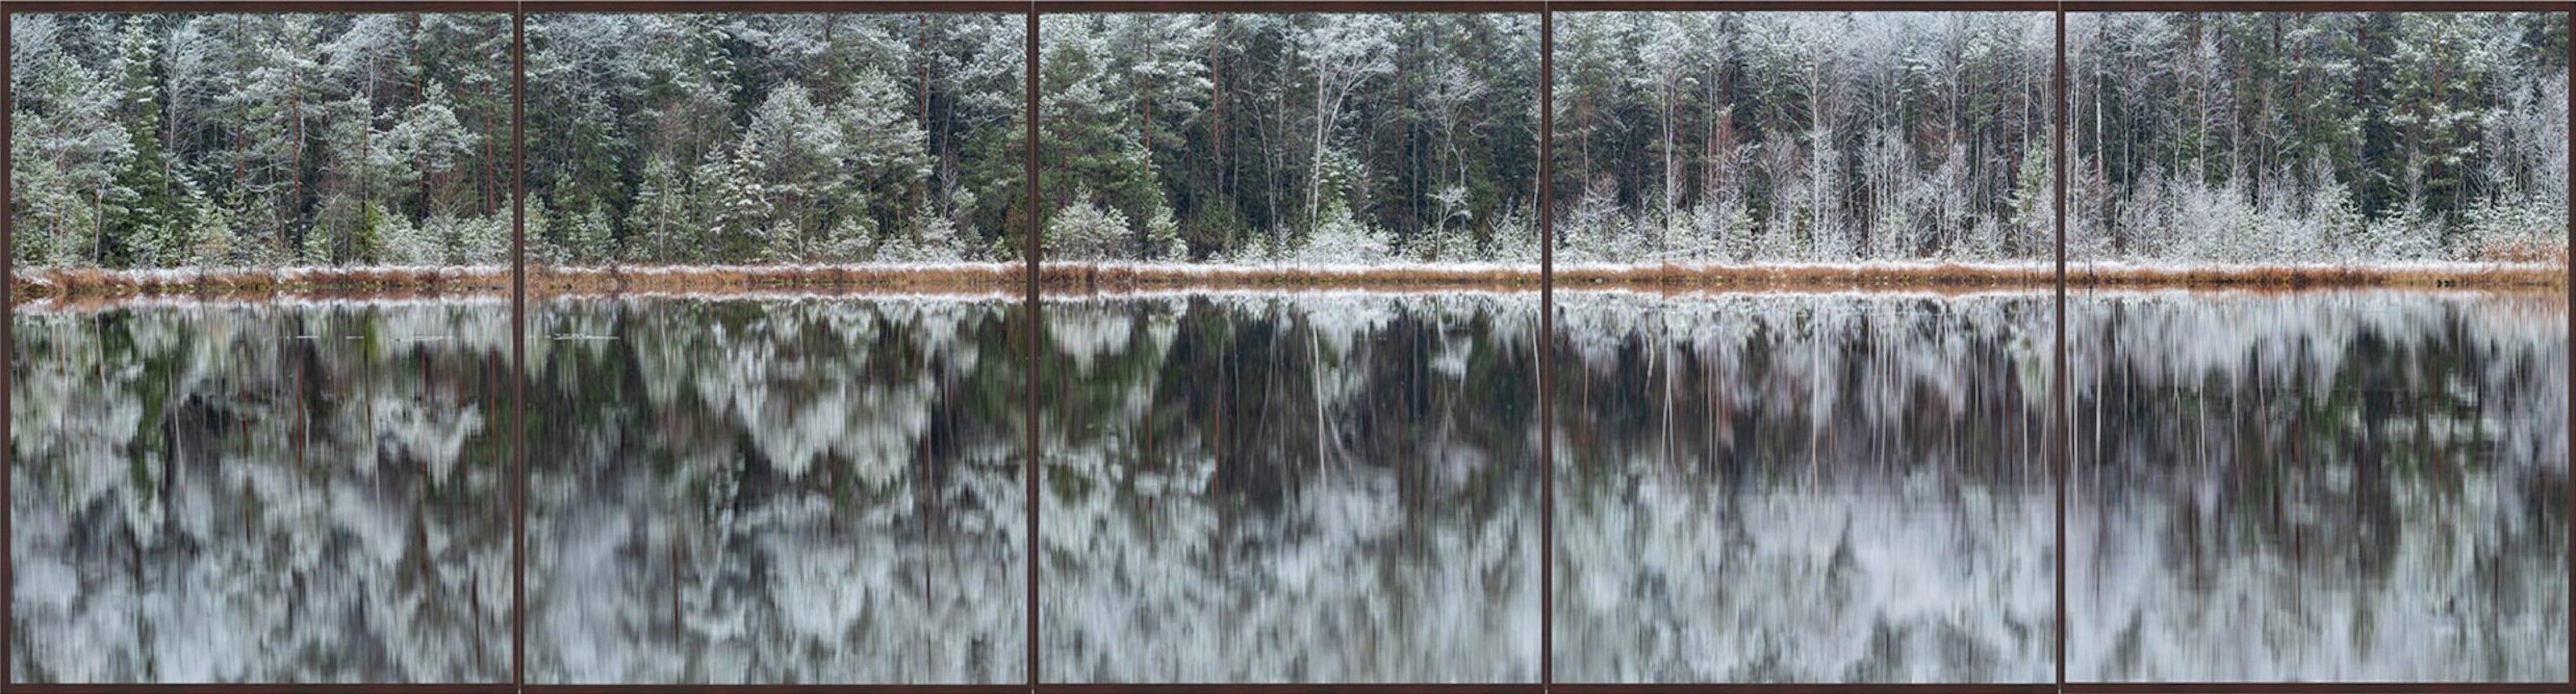 Deep Mirroring Forest 007 est une photographie en édition limitée de l'artiste contemporain allemand Bernhard Lang. 

Cette photographie est vendue non encadrée en tant que tirage uniquement. Il est disponible en 5 dimensions :
*30 × 112 cm (11.8 ×